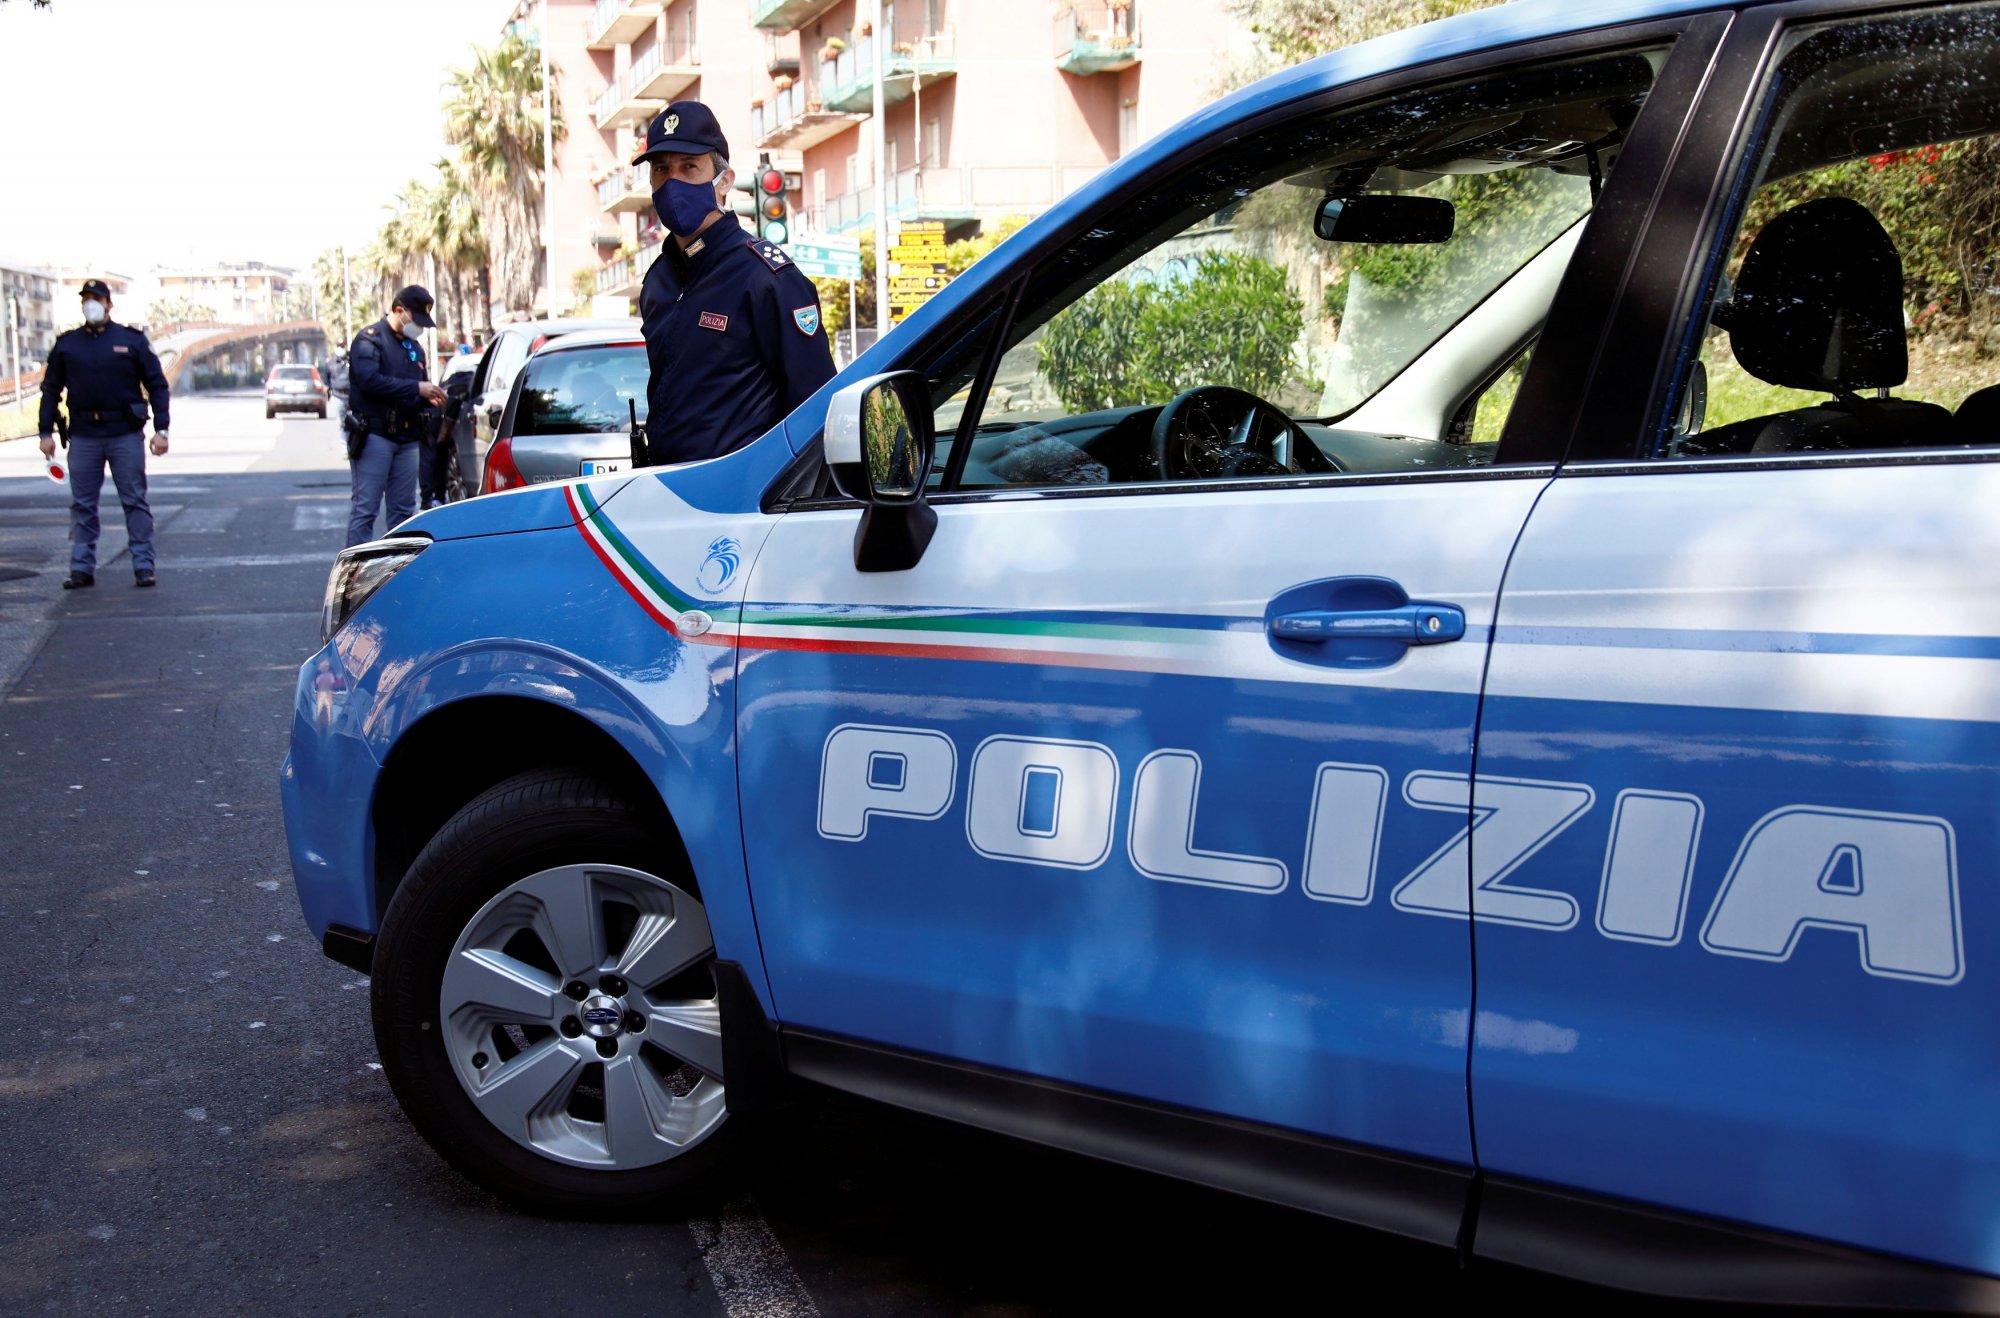 Ιταλία: Αστυνομικός παρακολουθούσε πάνω από 300 δημόσια πρόσωπα